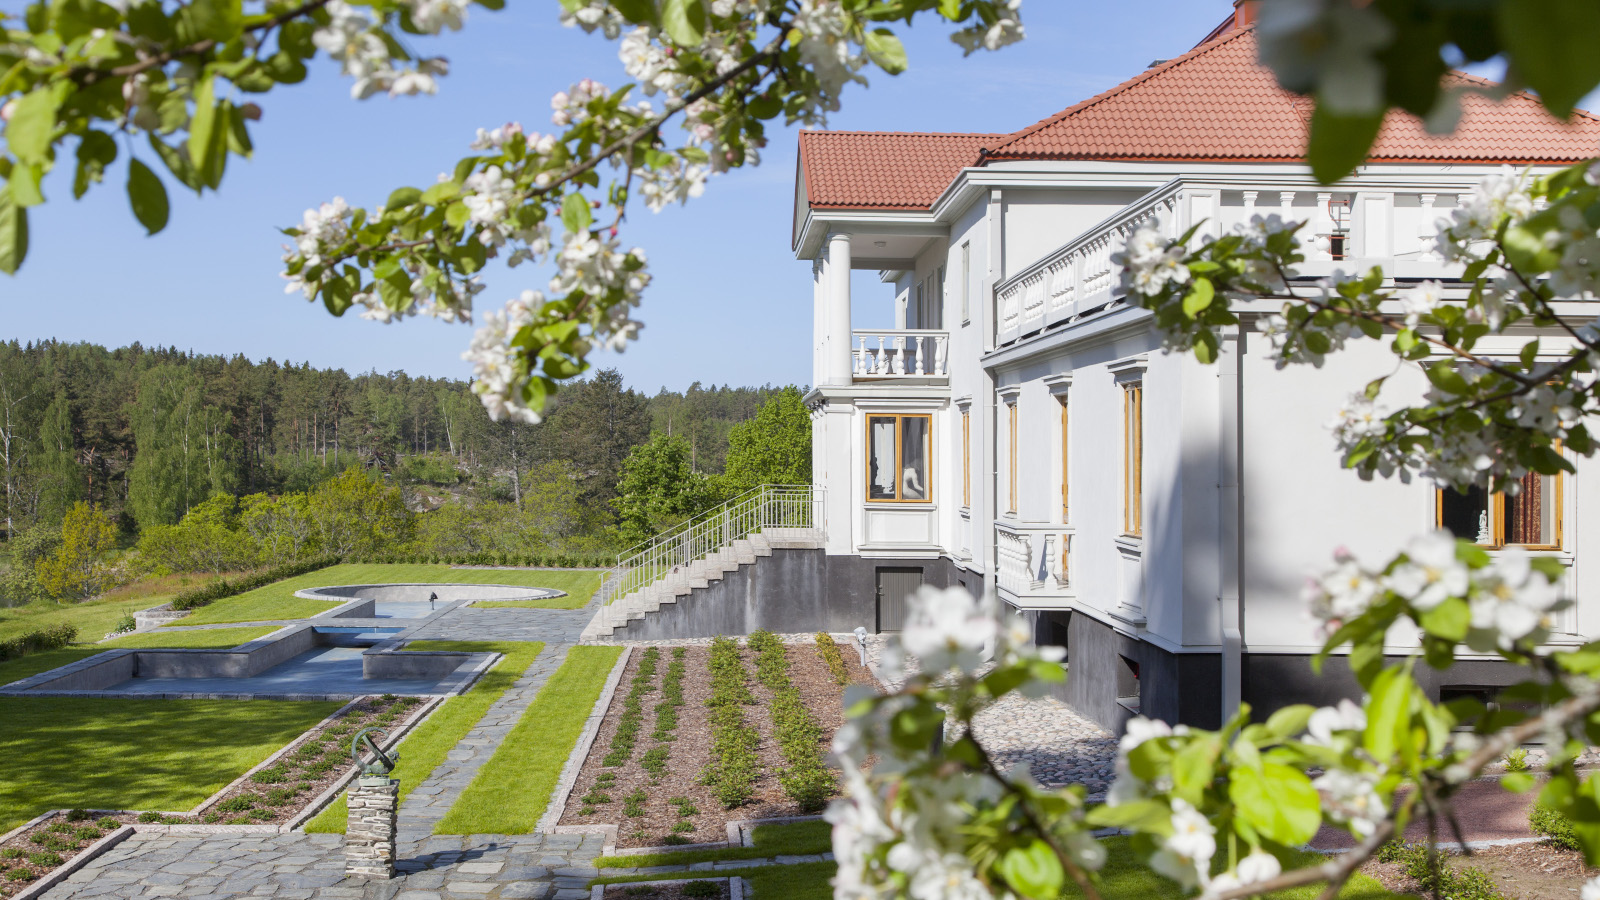 Amos Andersonin italiaistyylinen klassistinen villa sijaitsee Kemiönsaarella laajan omenatarhan keskellä.